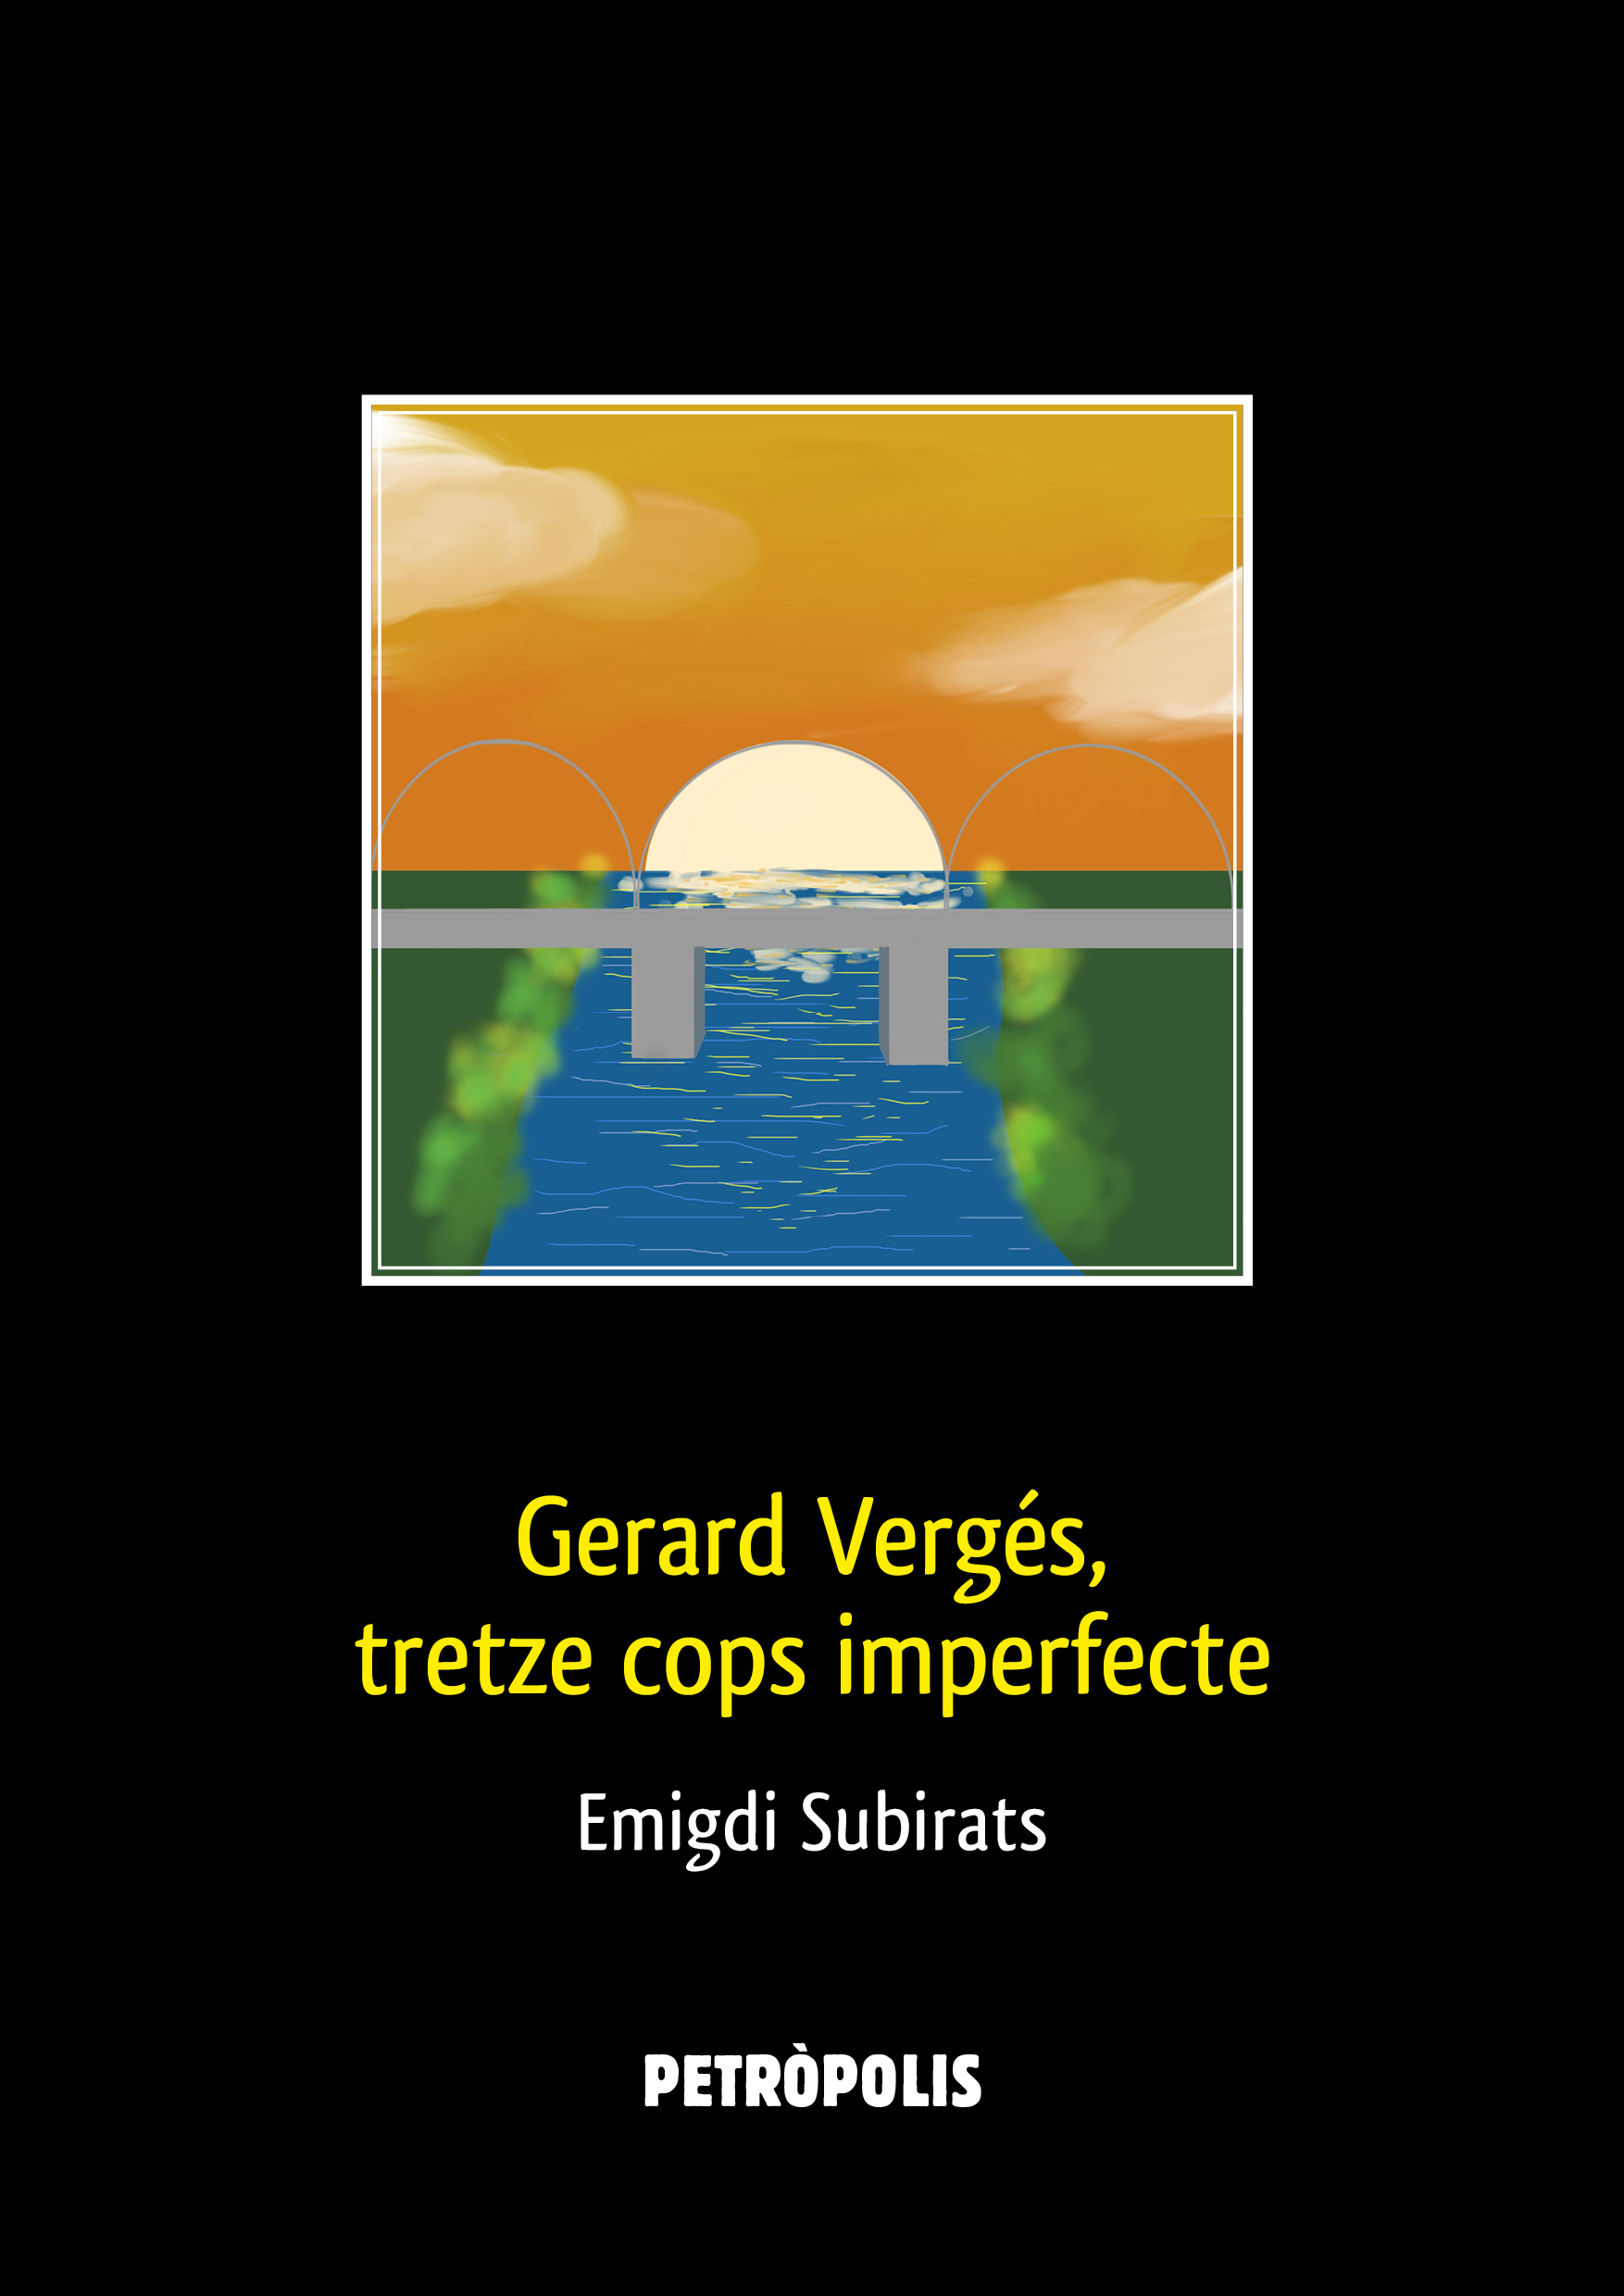 Gerard Vergés, tretze cops imperfecte (català language, 2021, Petròpolis)